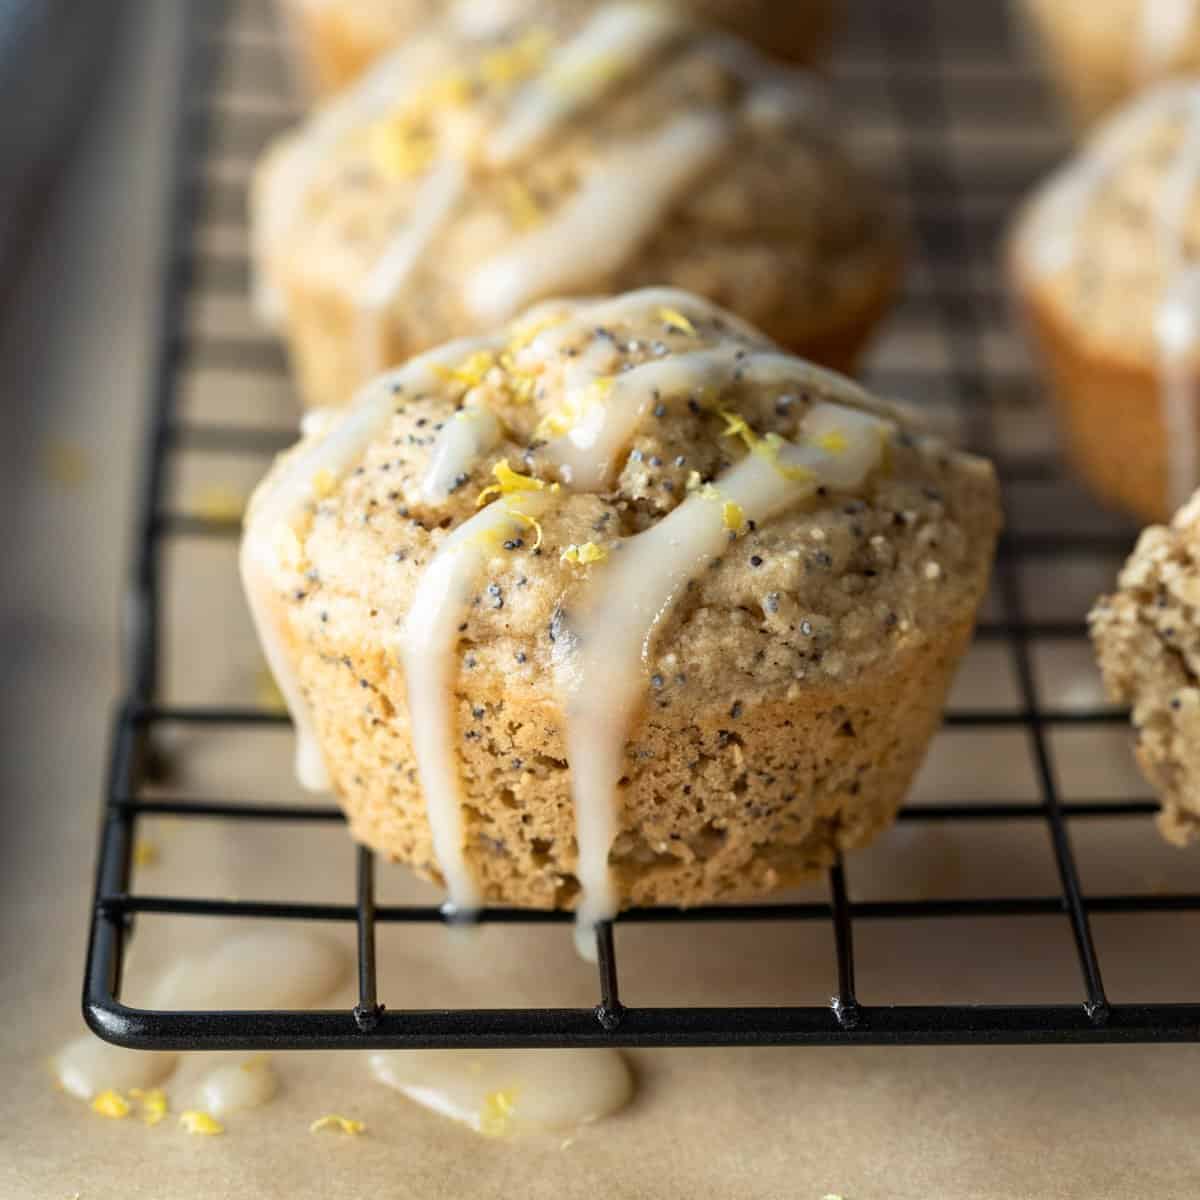 Vegan Lemon Poppy Seed Muffins